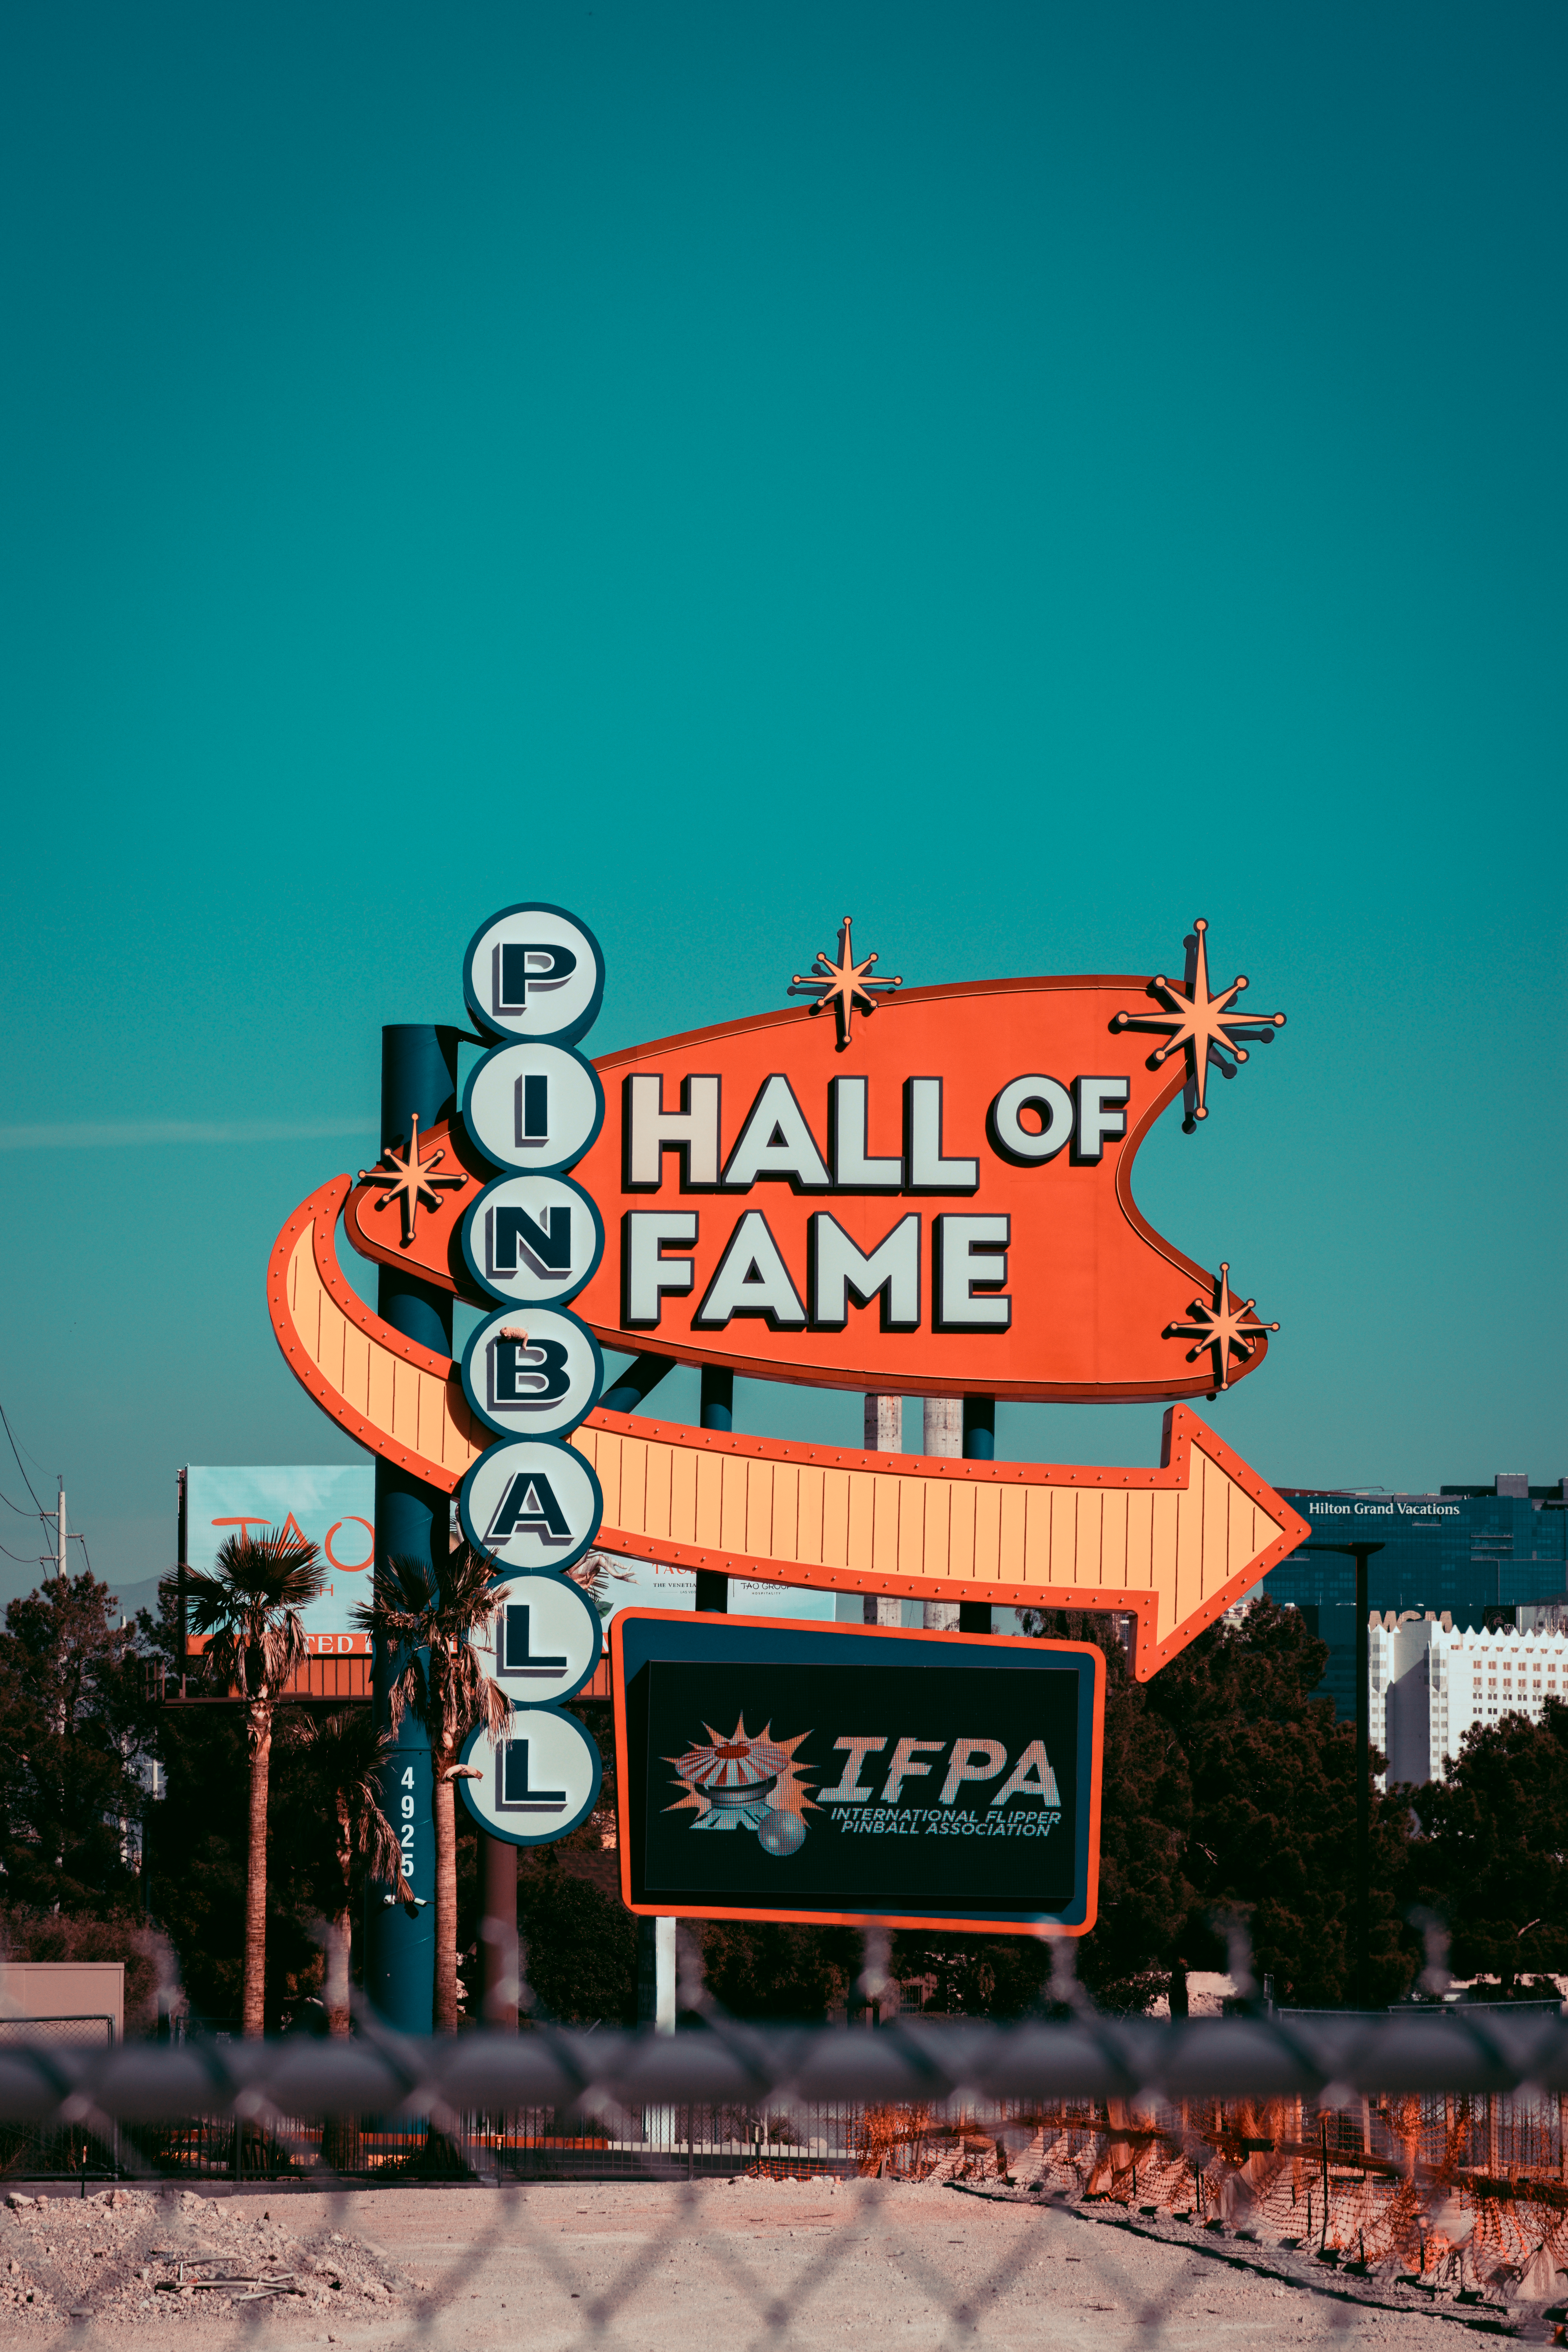 pinball hall of fame